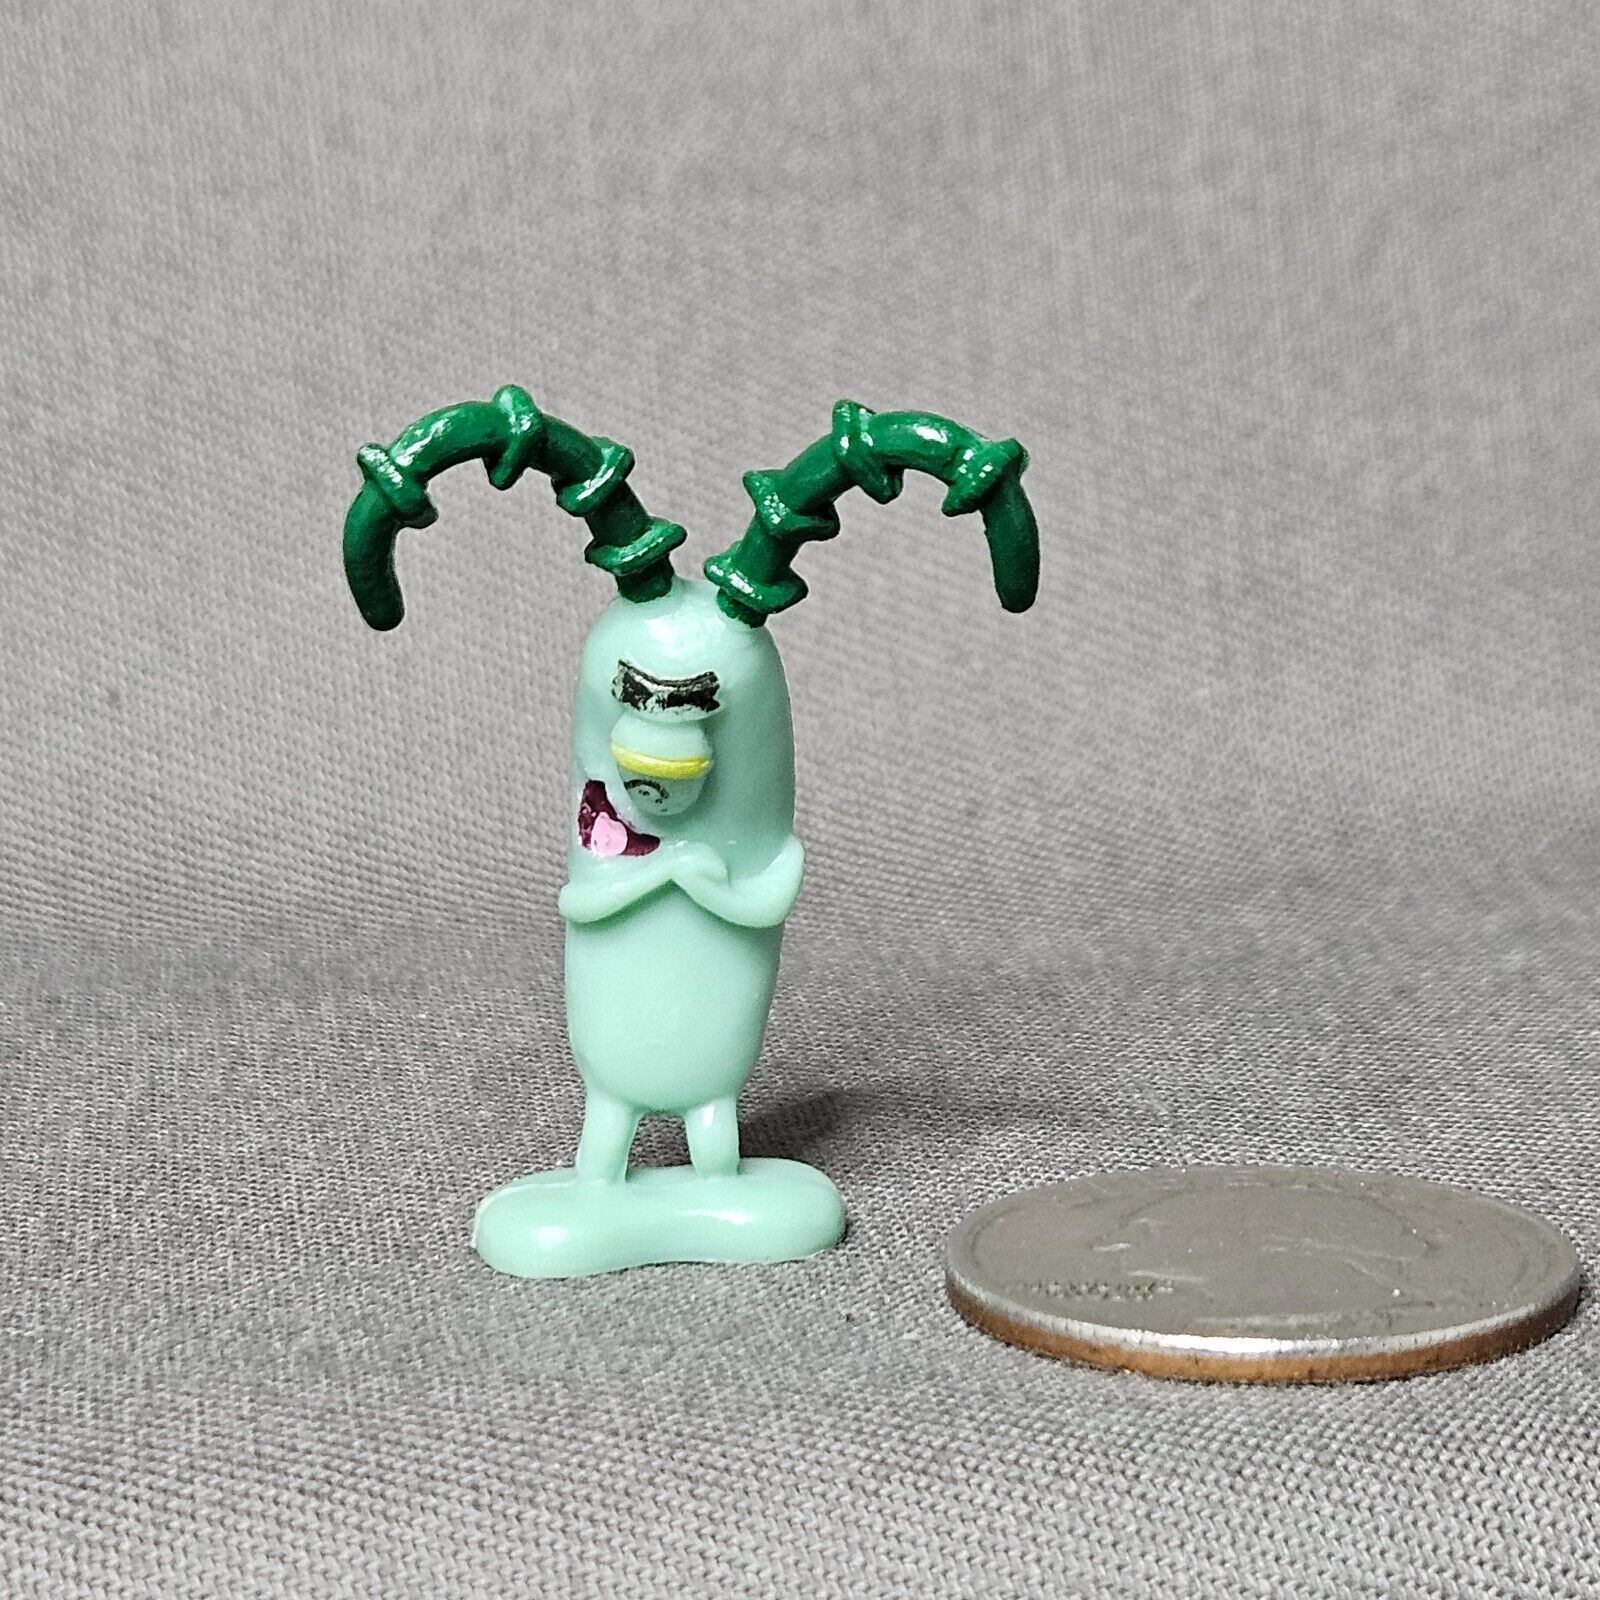 Sponge Bob Square Pants Mini PLANKTON 1-1/2” Plastic Figure/Figurine Toy